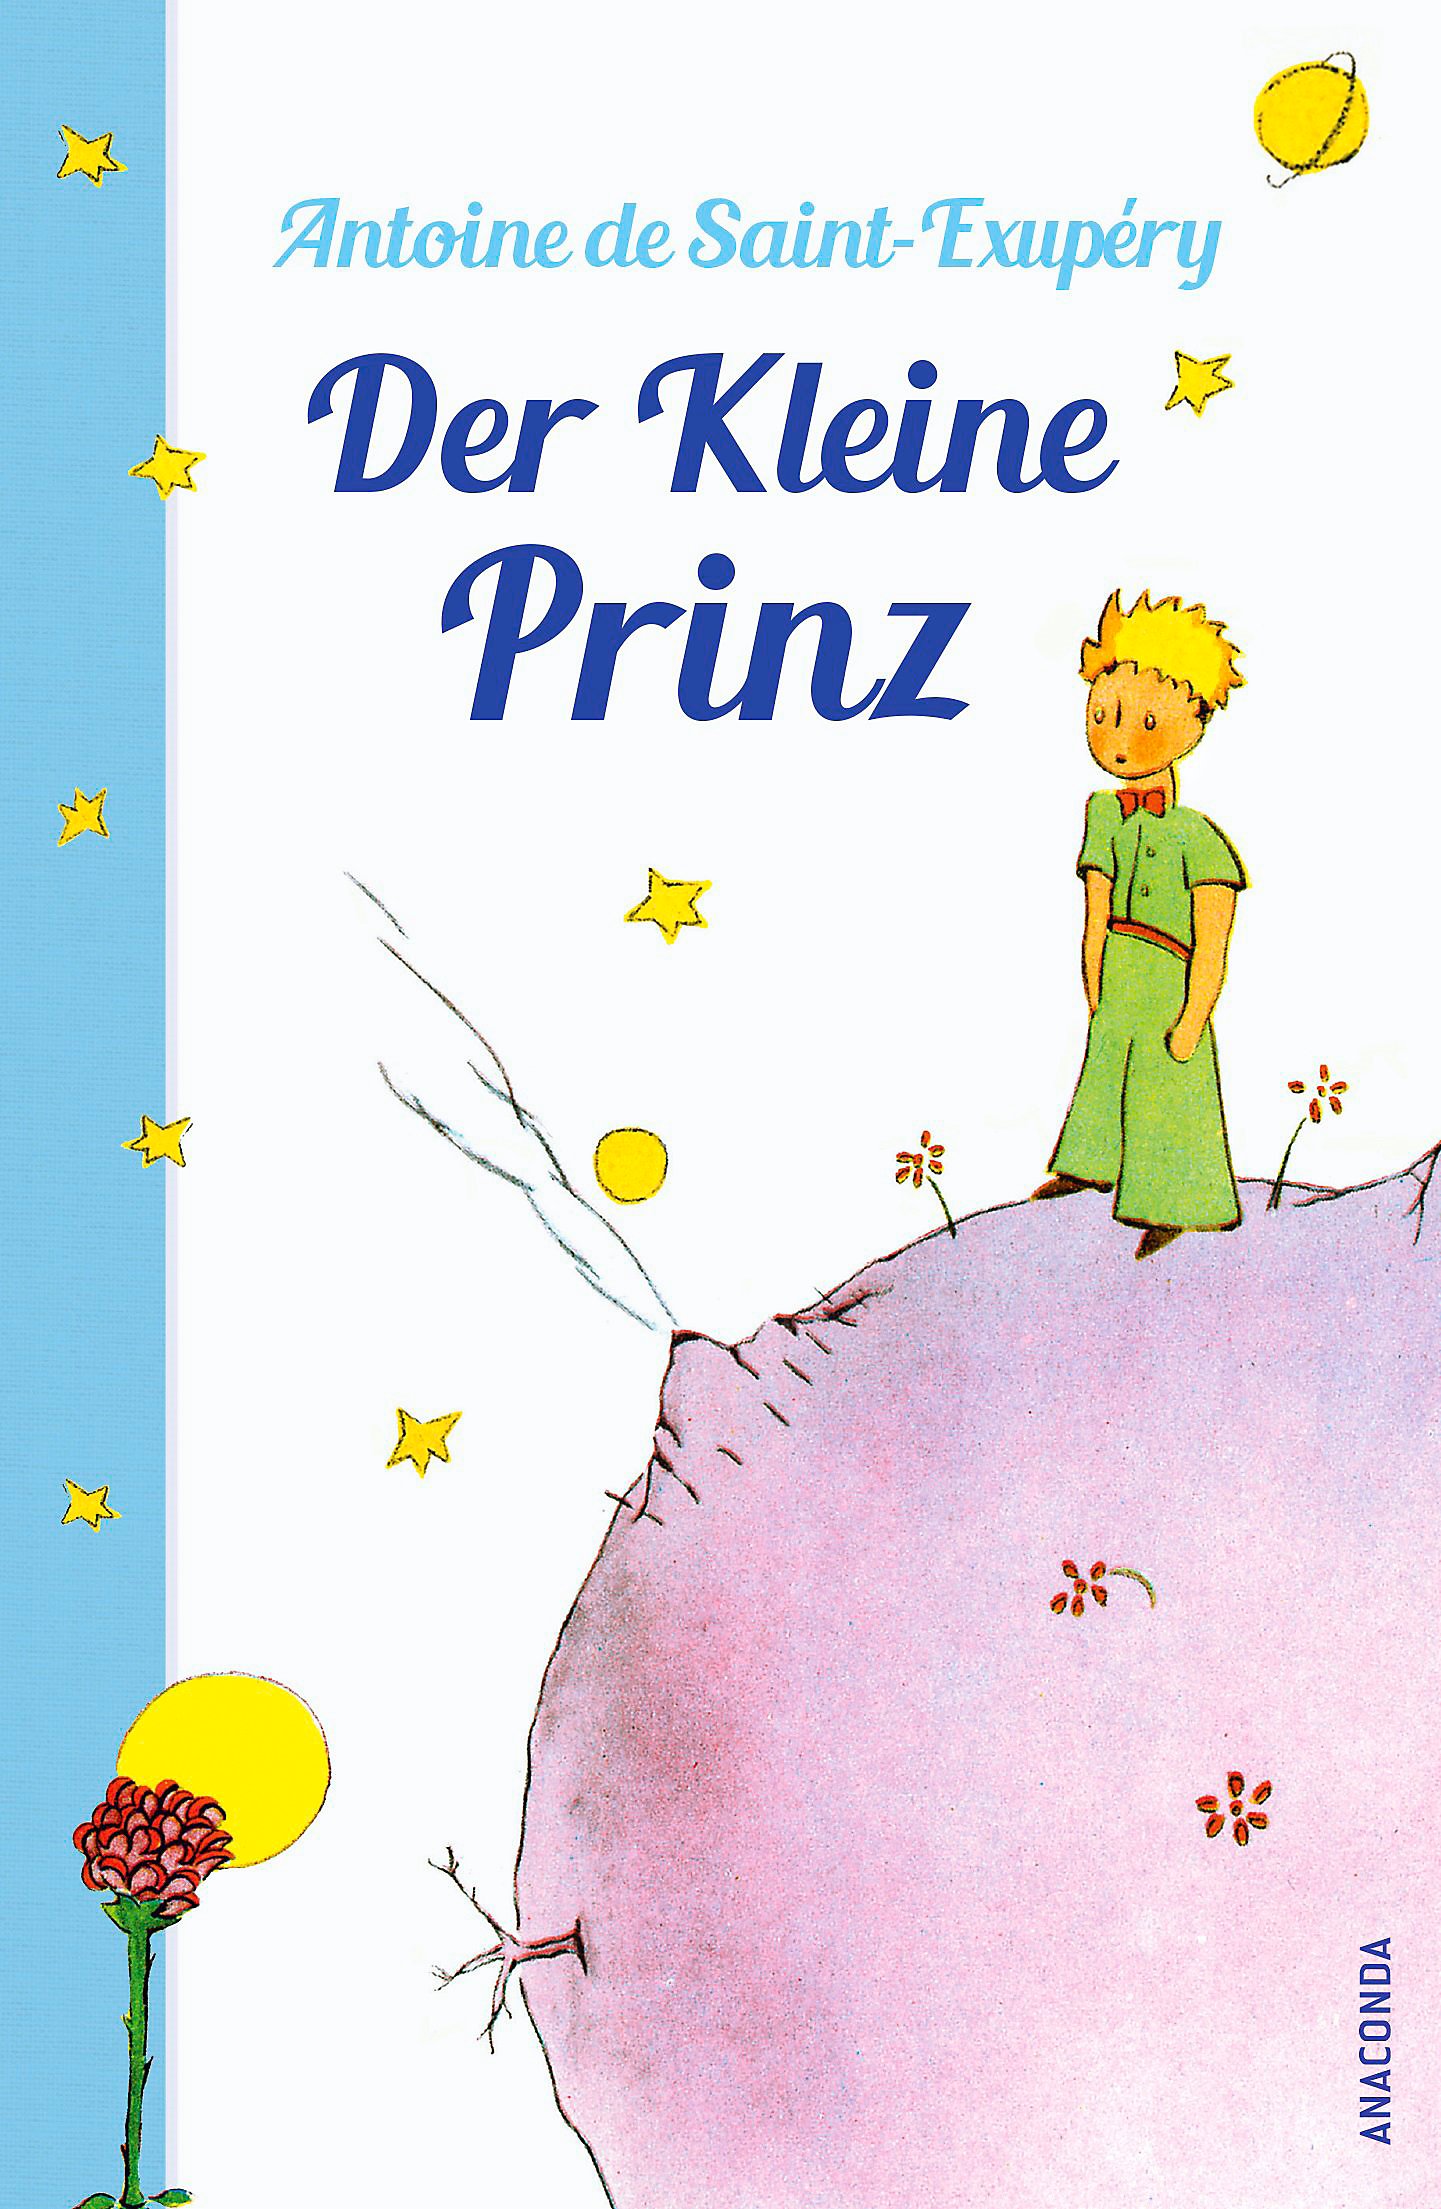 Antoine de Saint-Exupéry: Der kleine Prinz (German language, 1991, Karl Rauch Verlag)